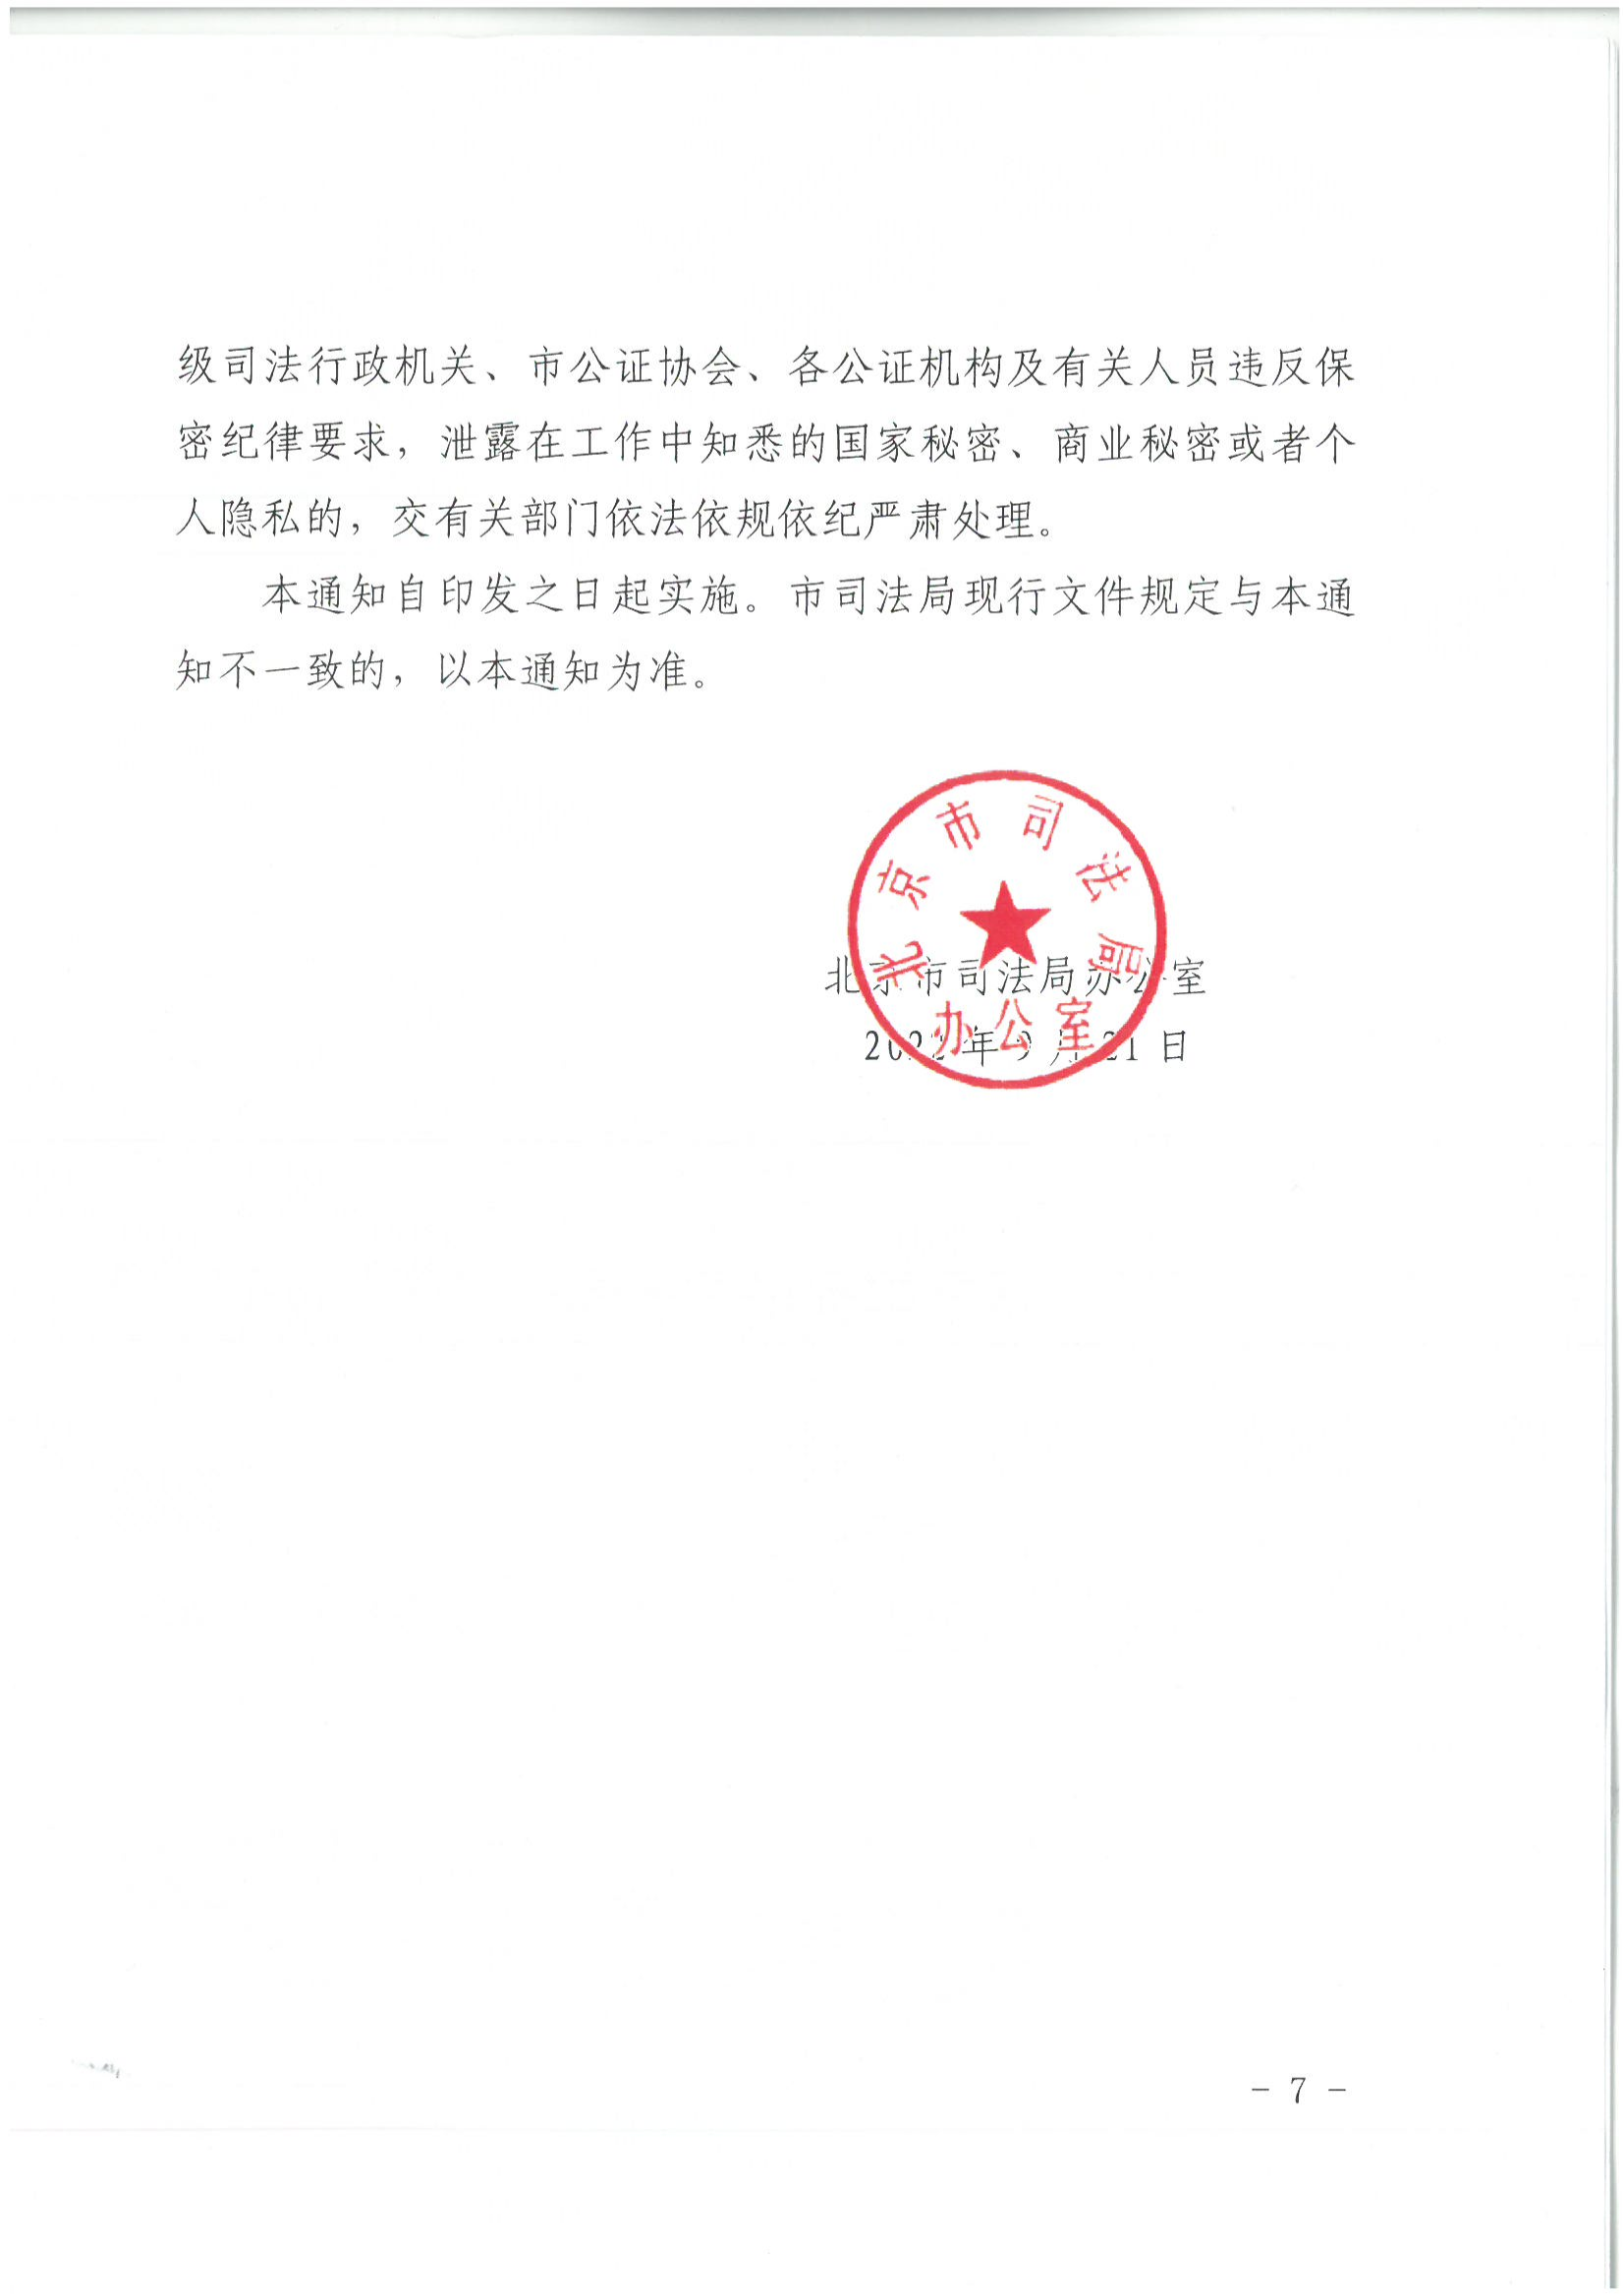 1北京市司法局办公室关于加强重大、敏感、涉众公证业务管理工作的通知_06